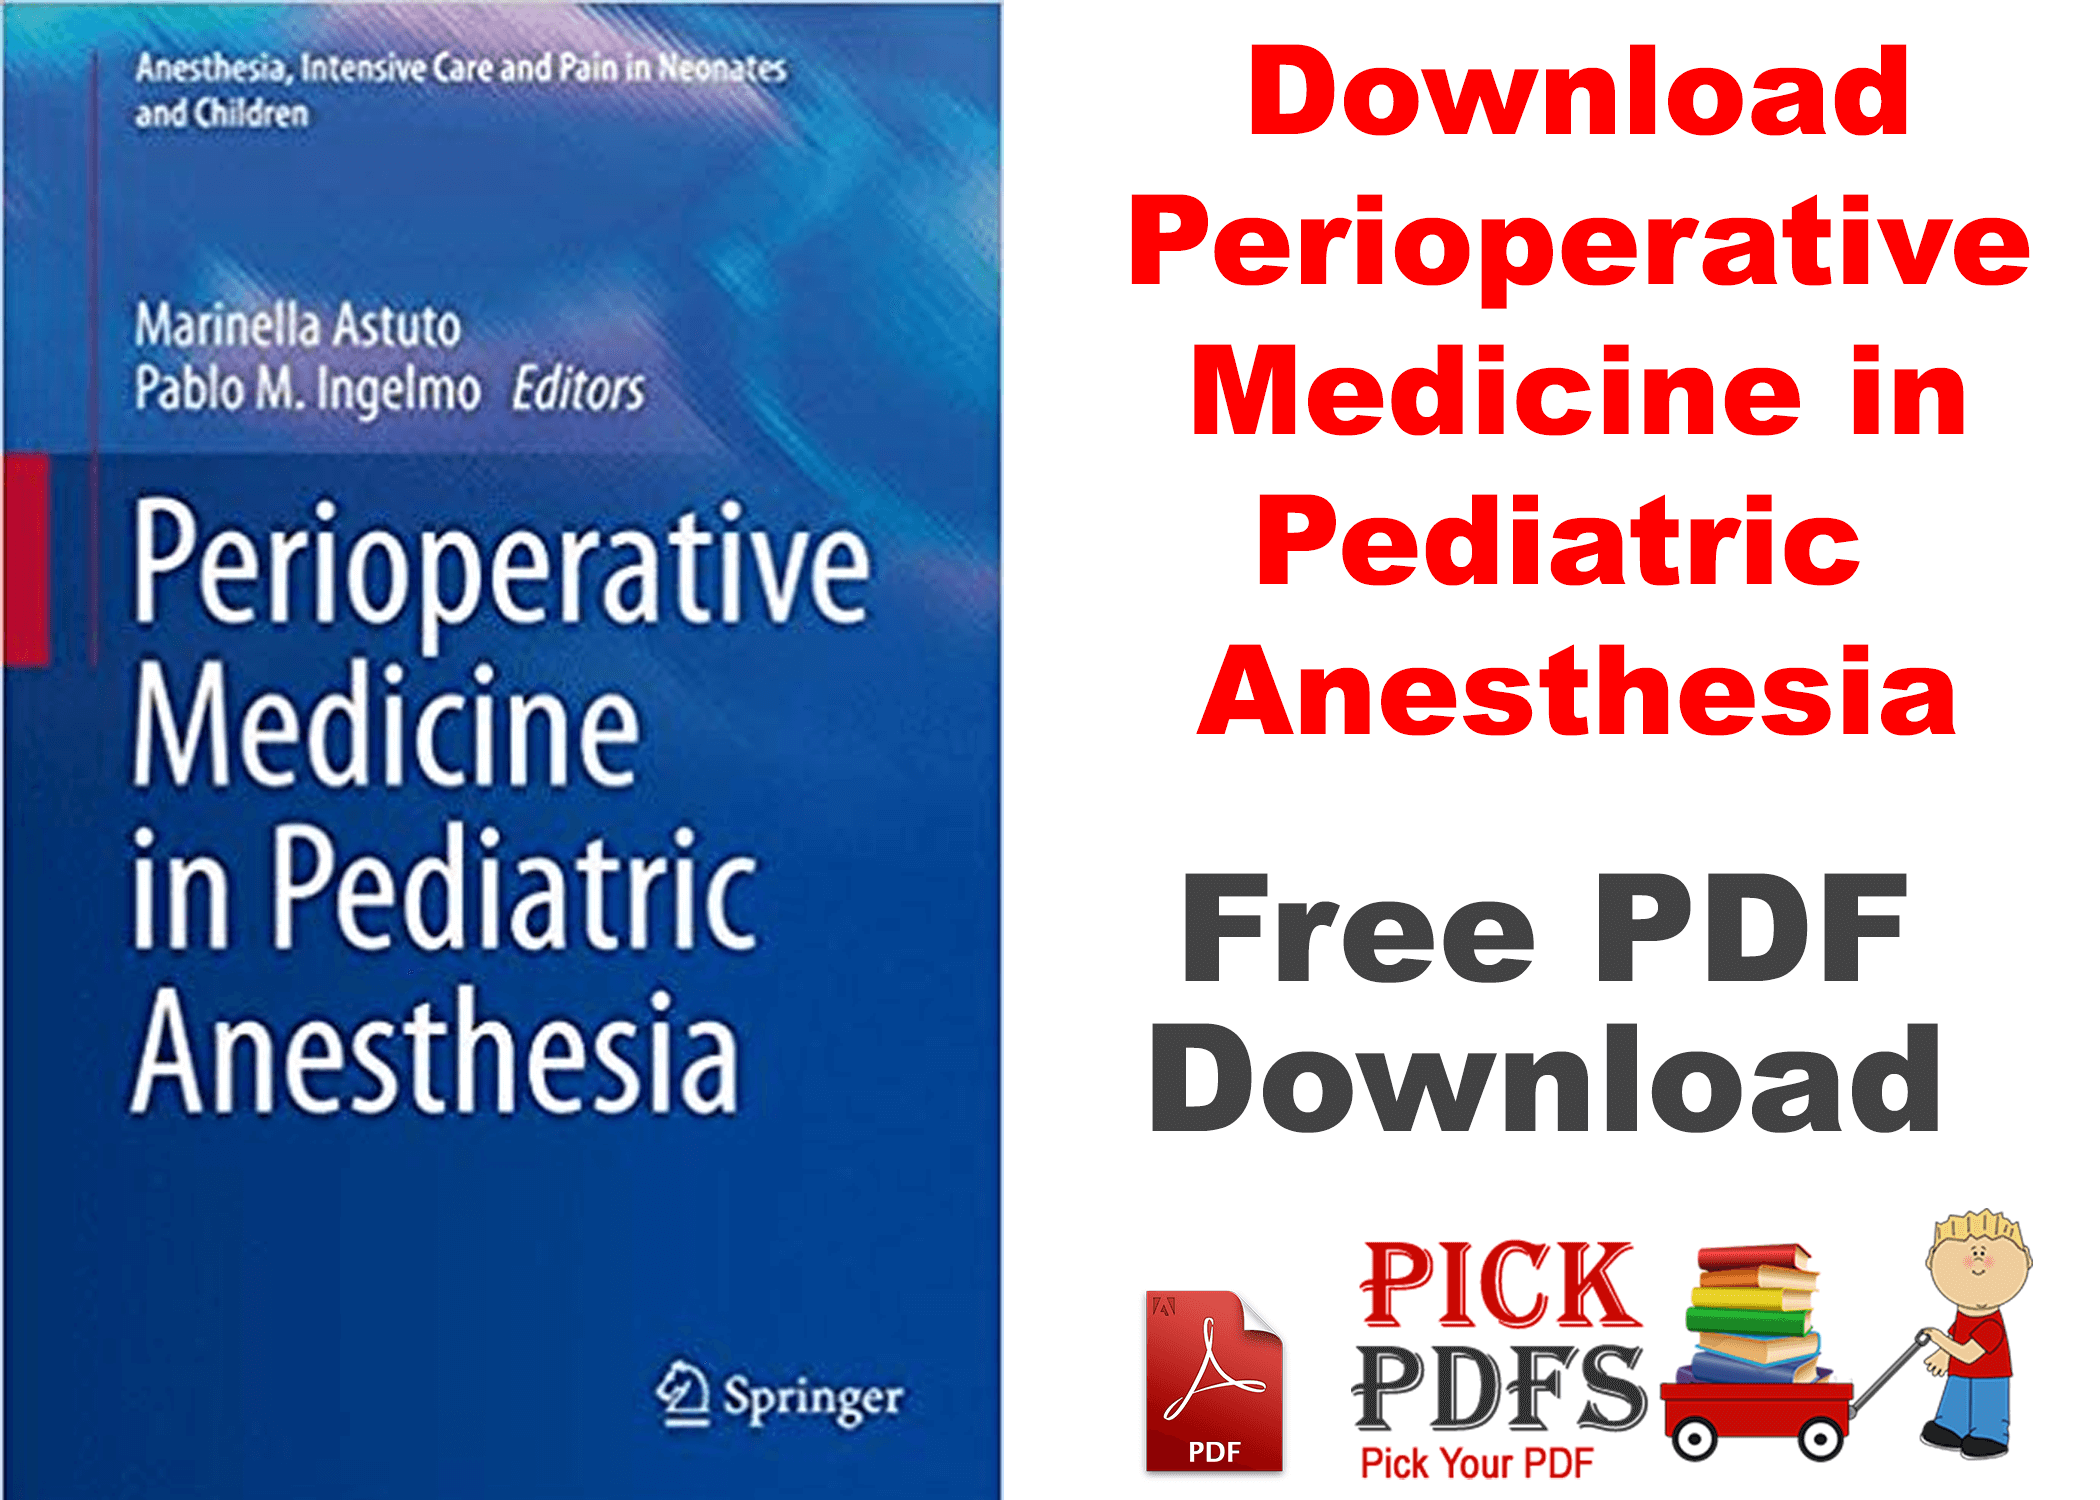 Perioperative Medicine in Pediatric Anesthesia